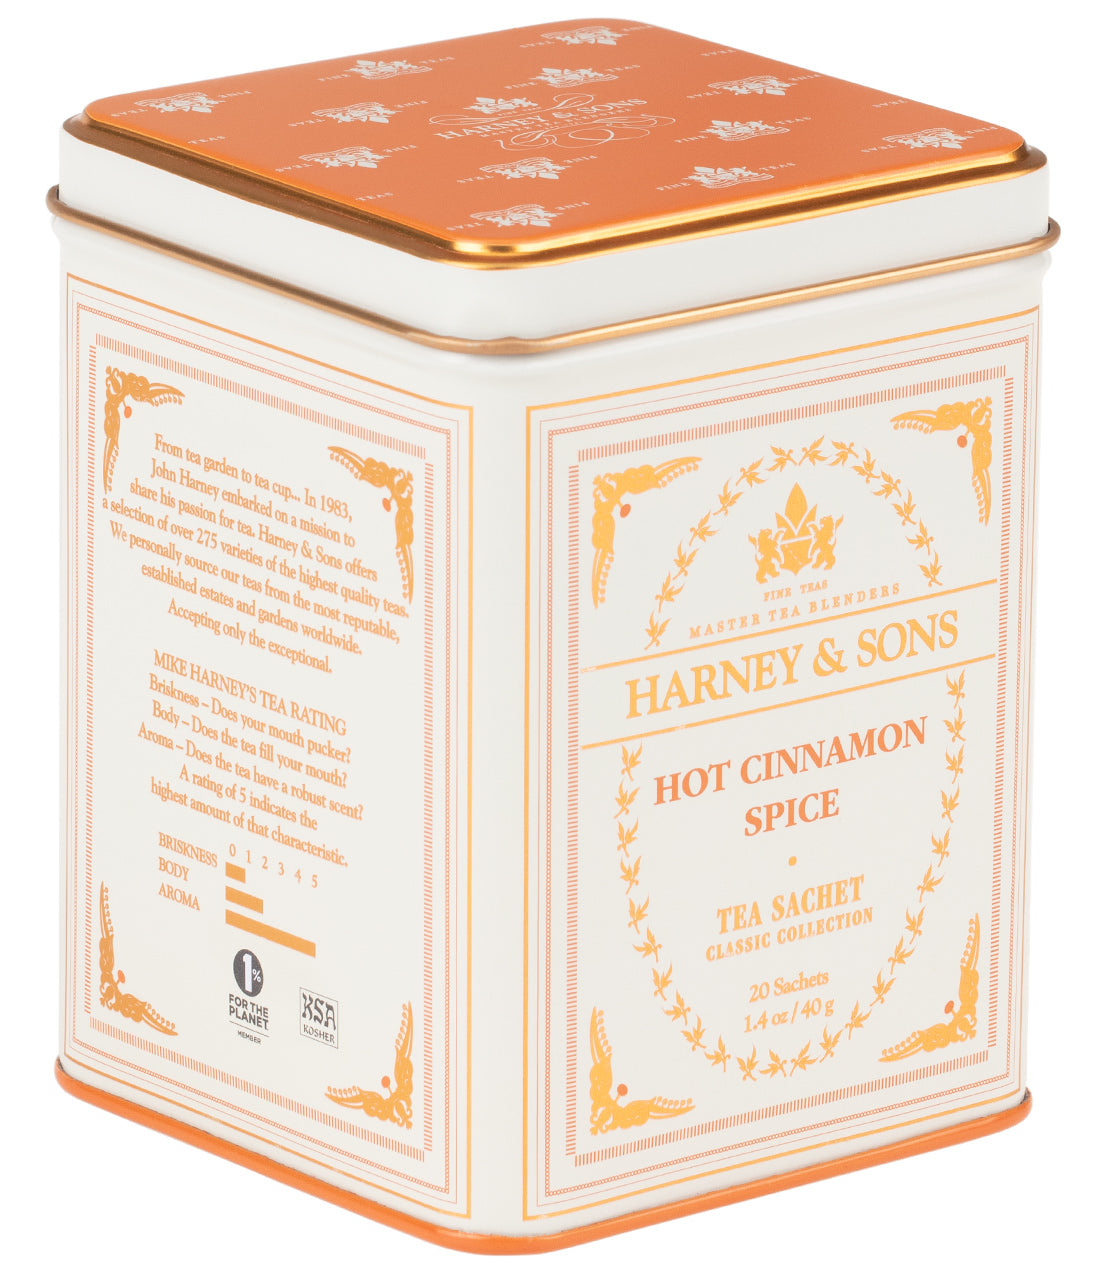 Hot Cinnamon Spice, Classic Tin of 20 Sachets - Sachets Single Classic Tin of 20 Sachets - Harney & Sons Fine Teas